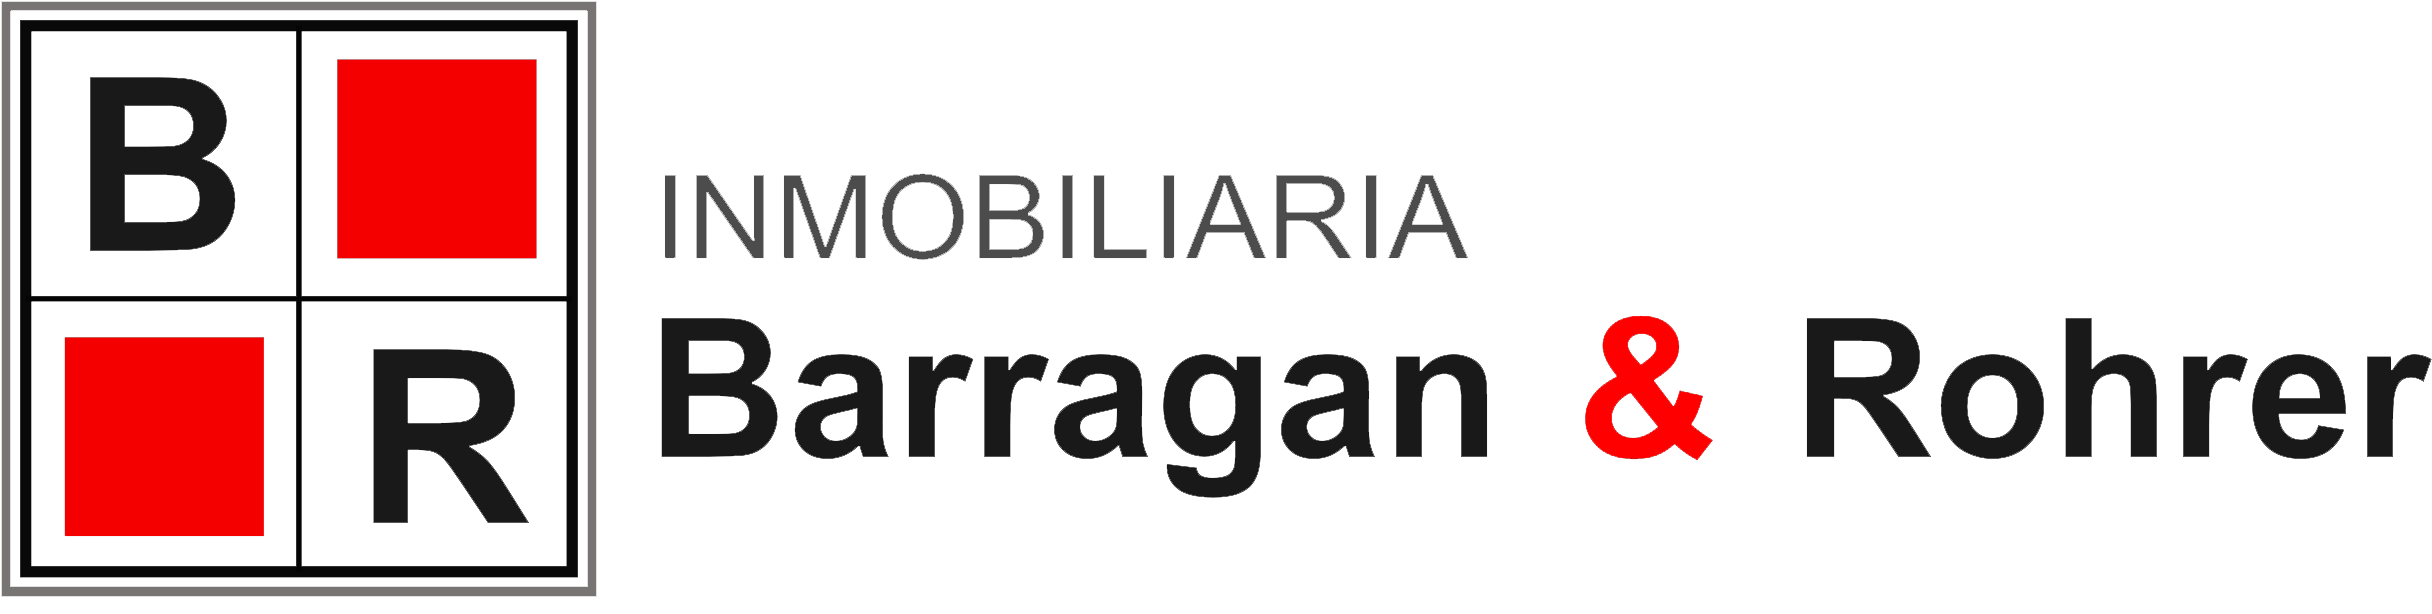 Barragan & Rohrer Inmobiliaria